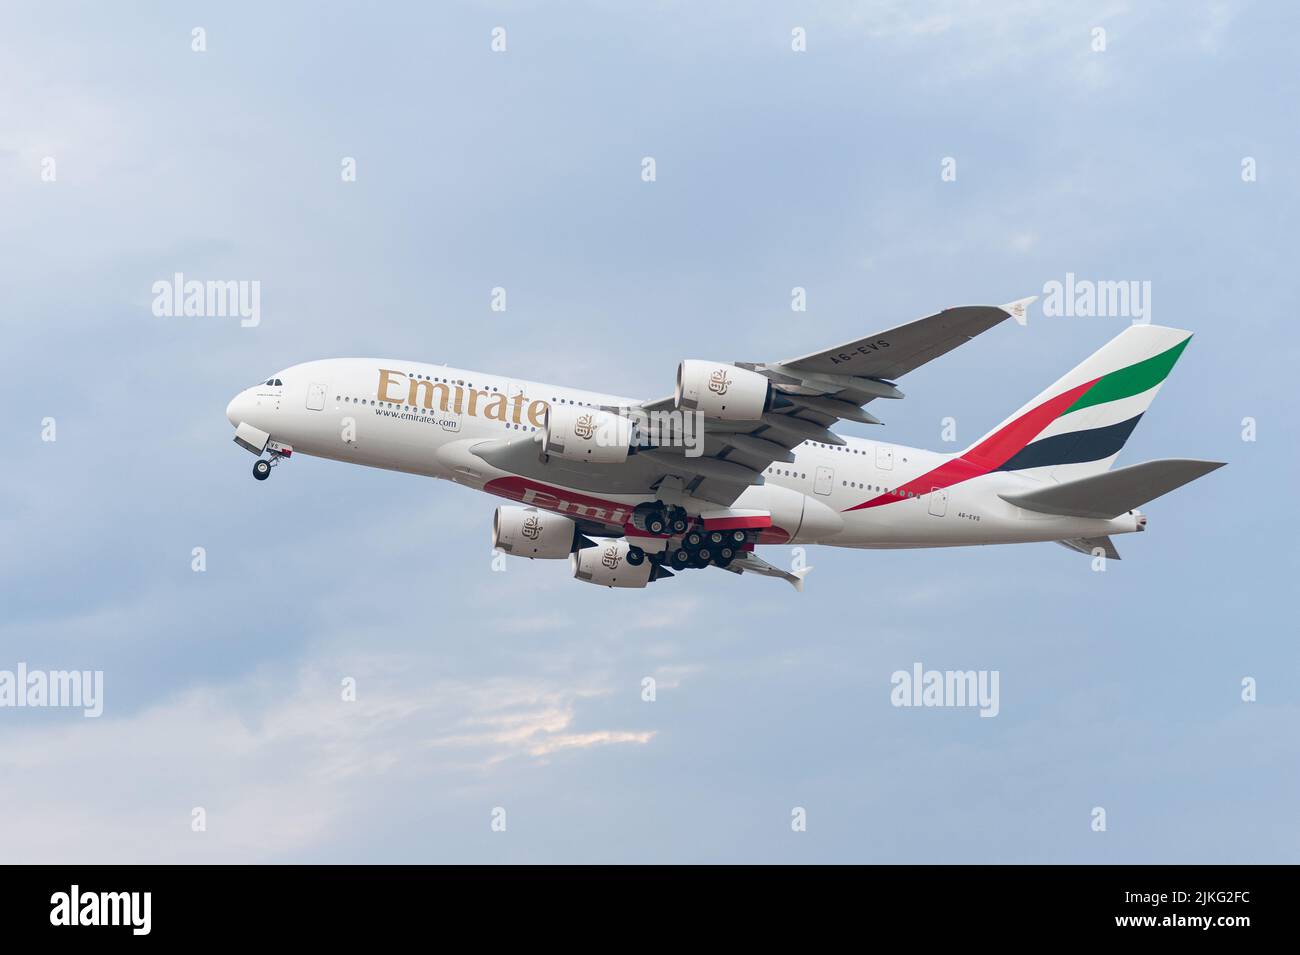 25.06.2022, Germania, Berlino, Berlino - Europa - un aereo Emirates Airline Airbus A380-800 passeggeri con registrazione A6-EVS al decollo da Berlino Foto Stock